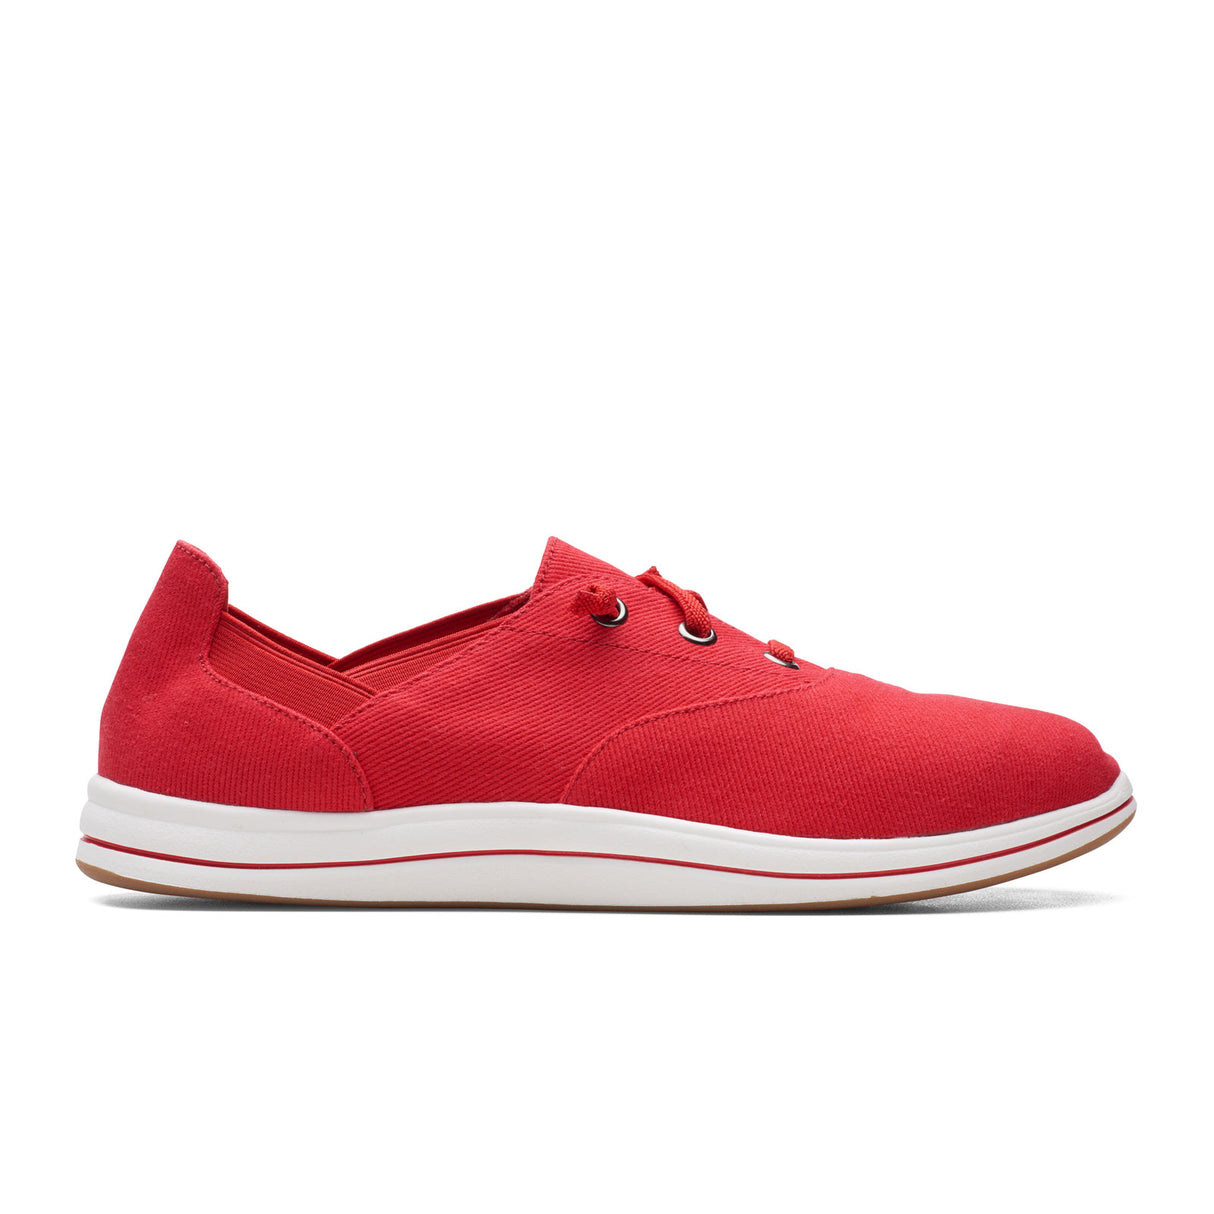 Clarks Breeze Ave Sneaker (Women) - Red Dress-Casual - Sneakers - The Heel Shoe Fitters